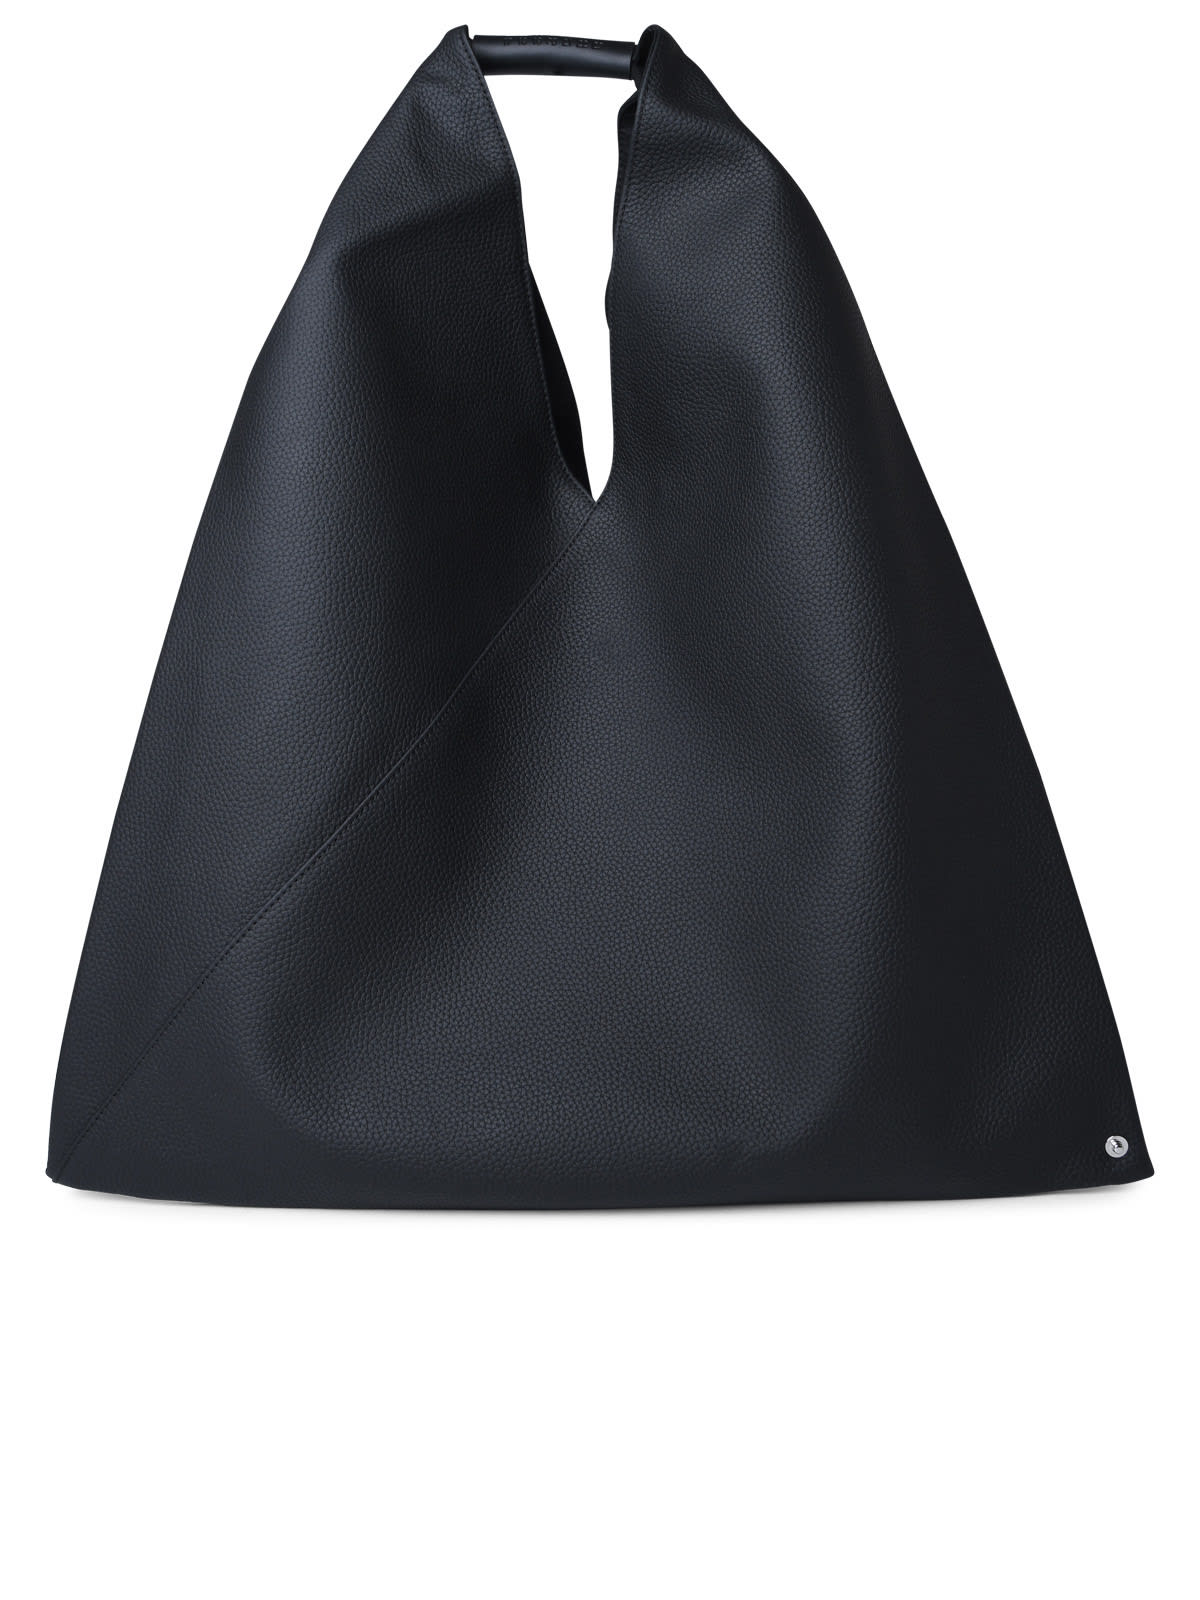 Mm6 Maison Margiela Japanese Black Leather Bag